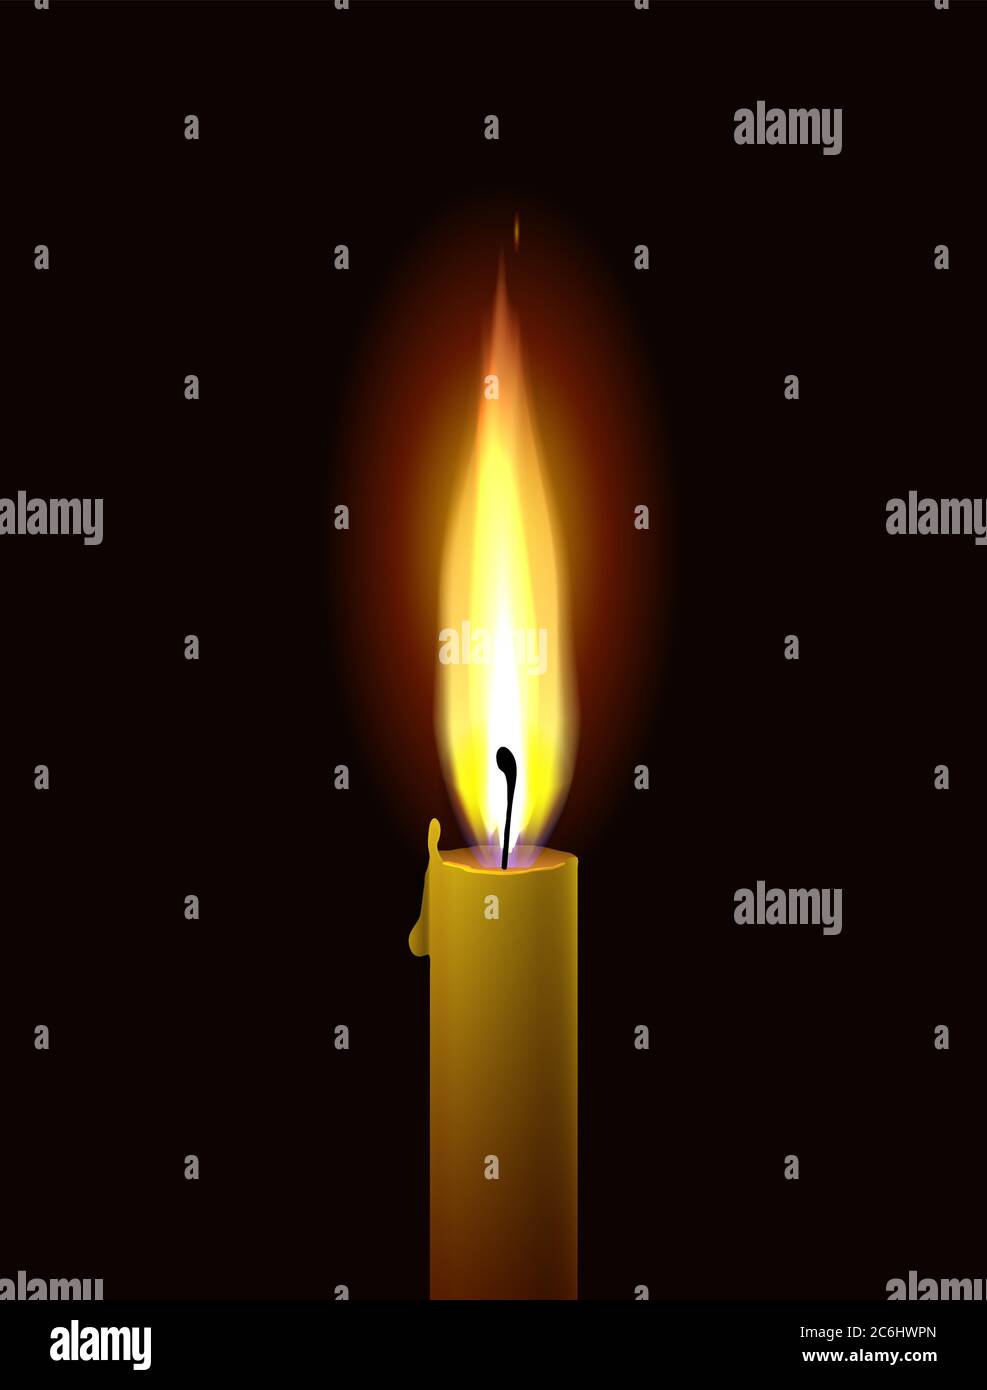 Fiamma di candela Immagini Vettoriali Stock - Alamy